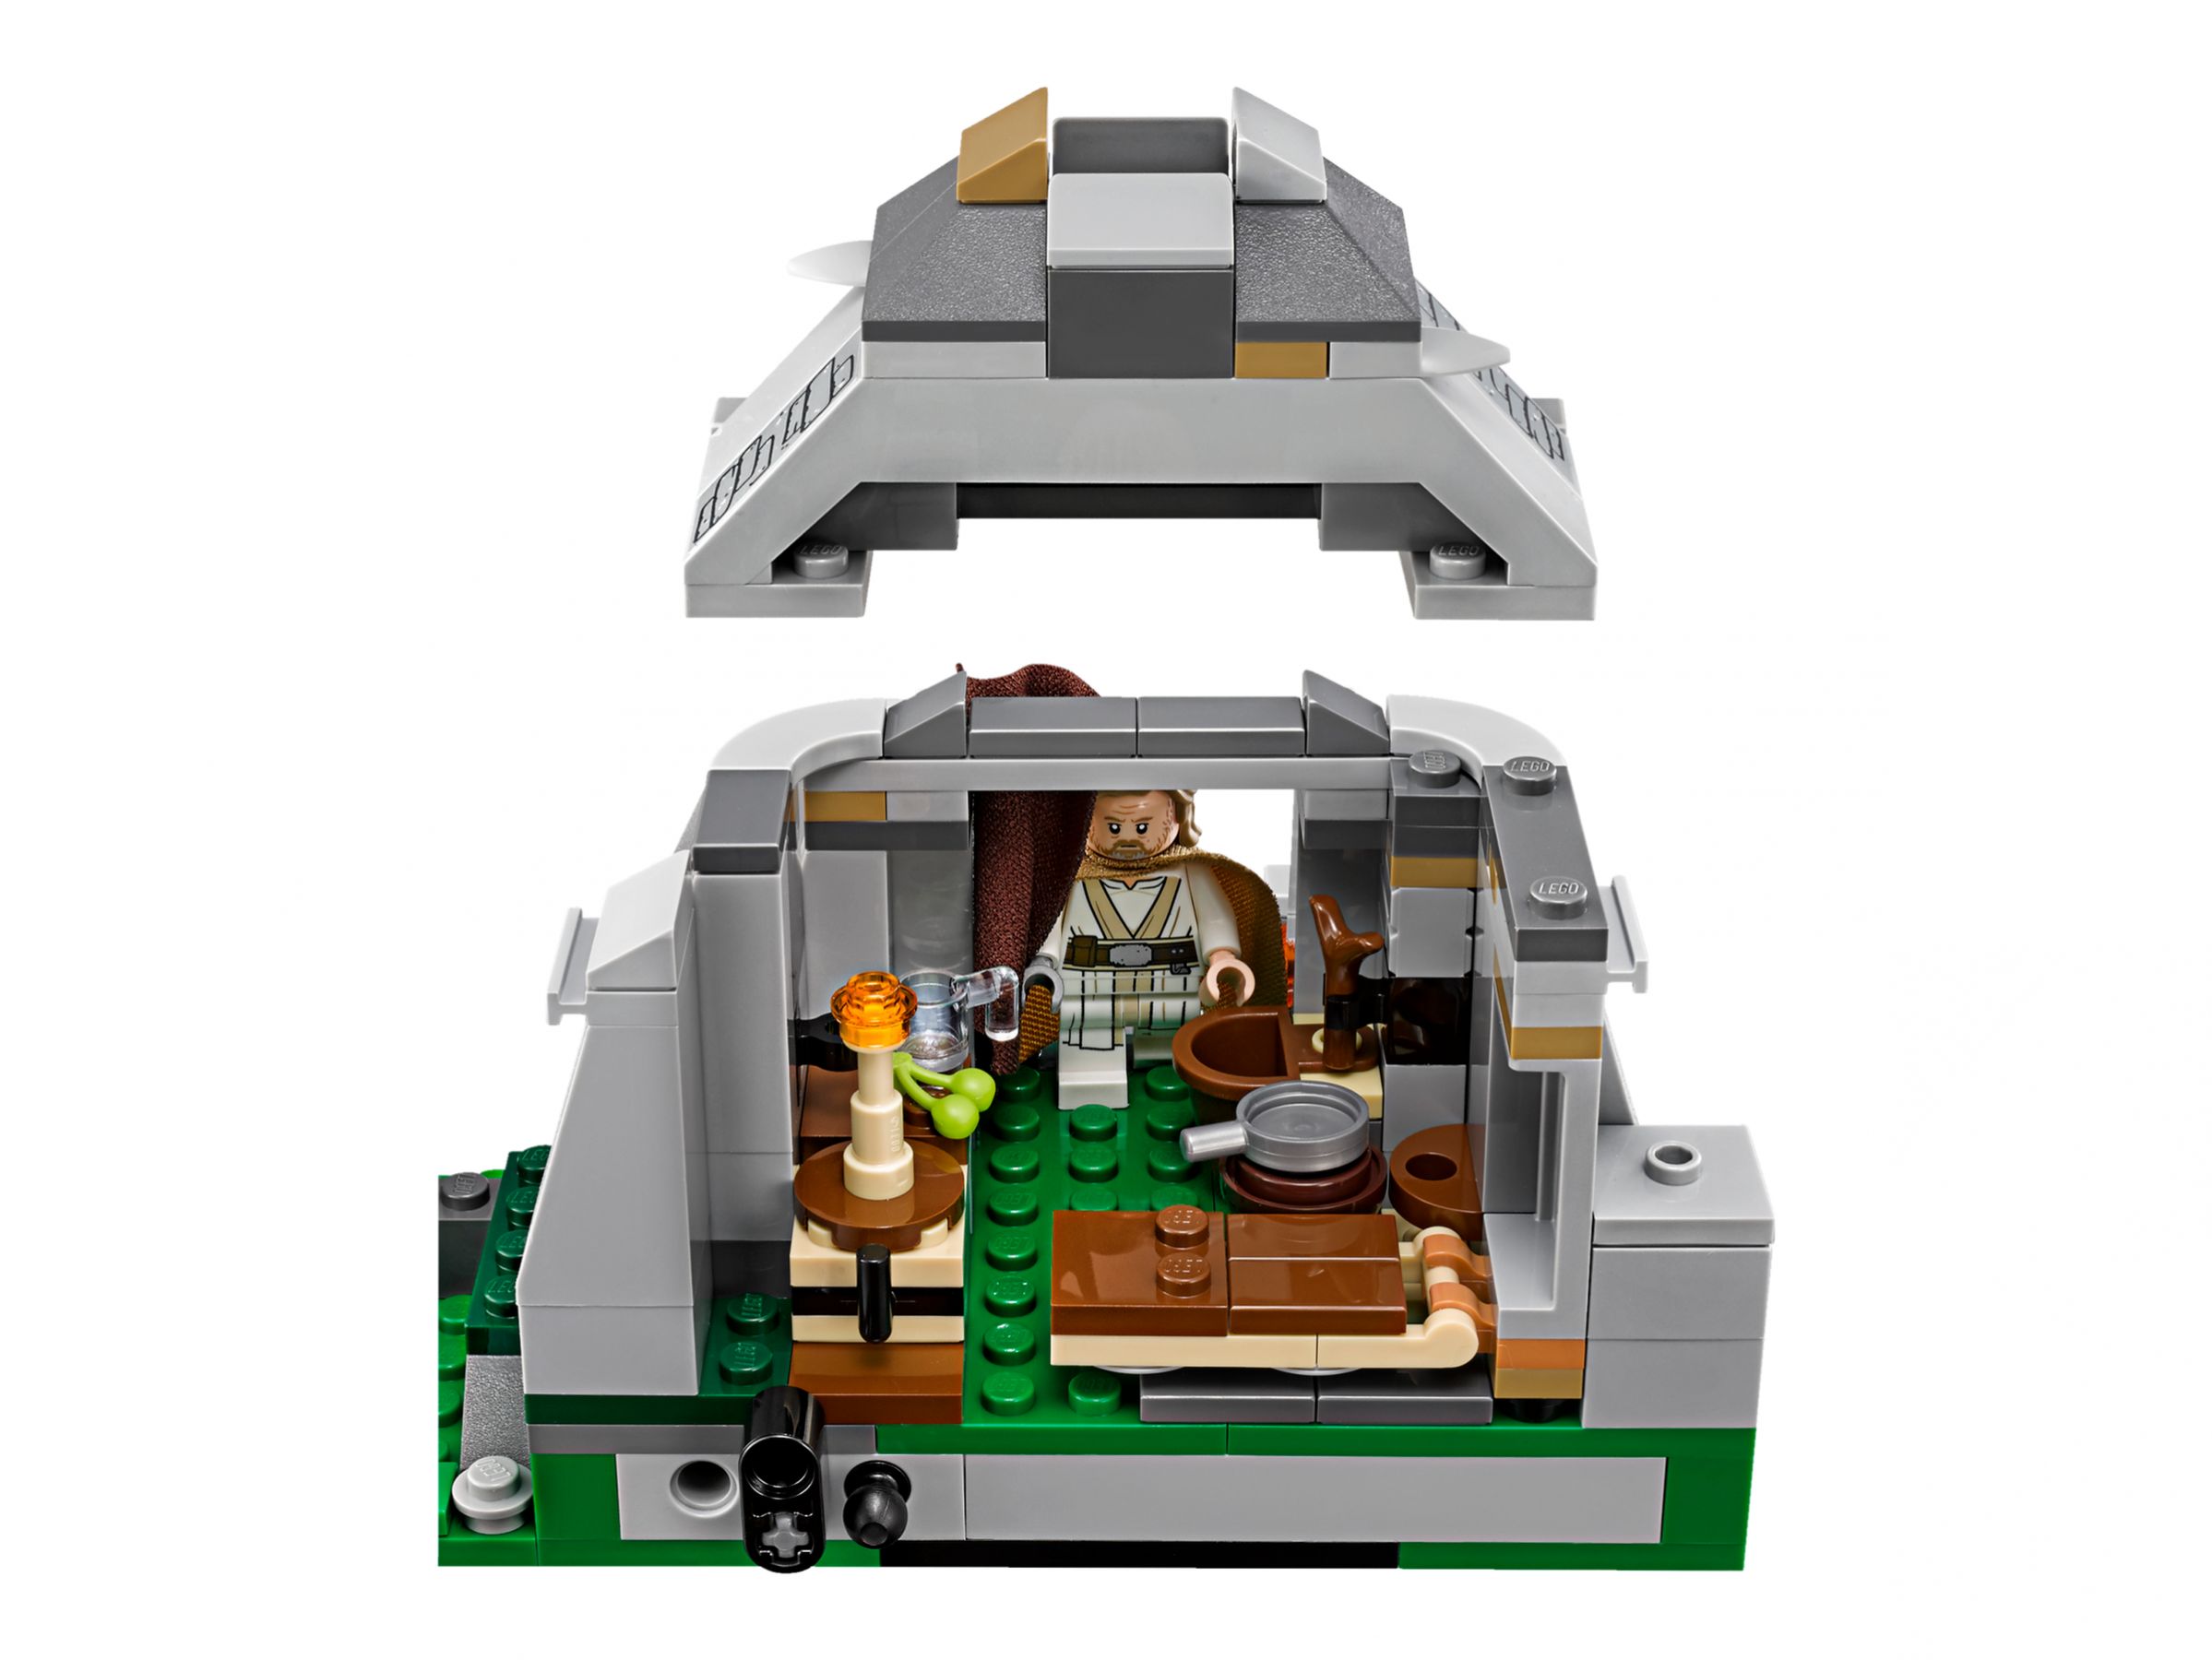 LEGO Star Wars 75200 Ahch-To Island™ Training LEGO_75200_alt5.jpg